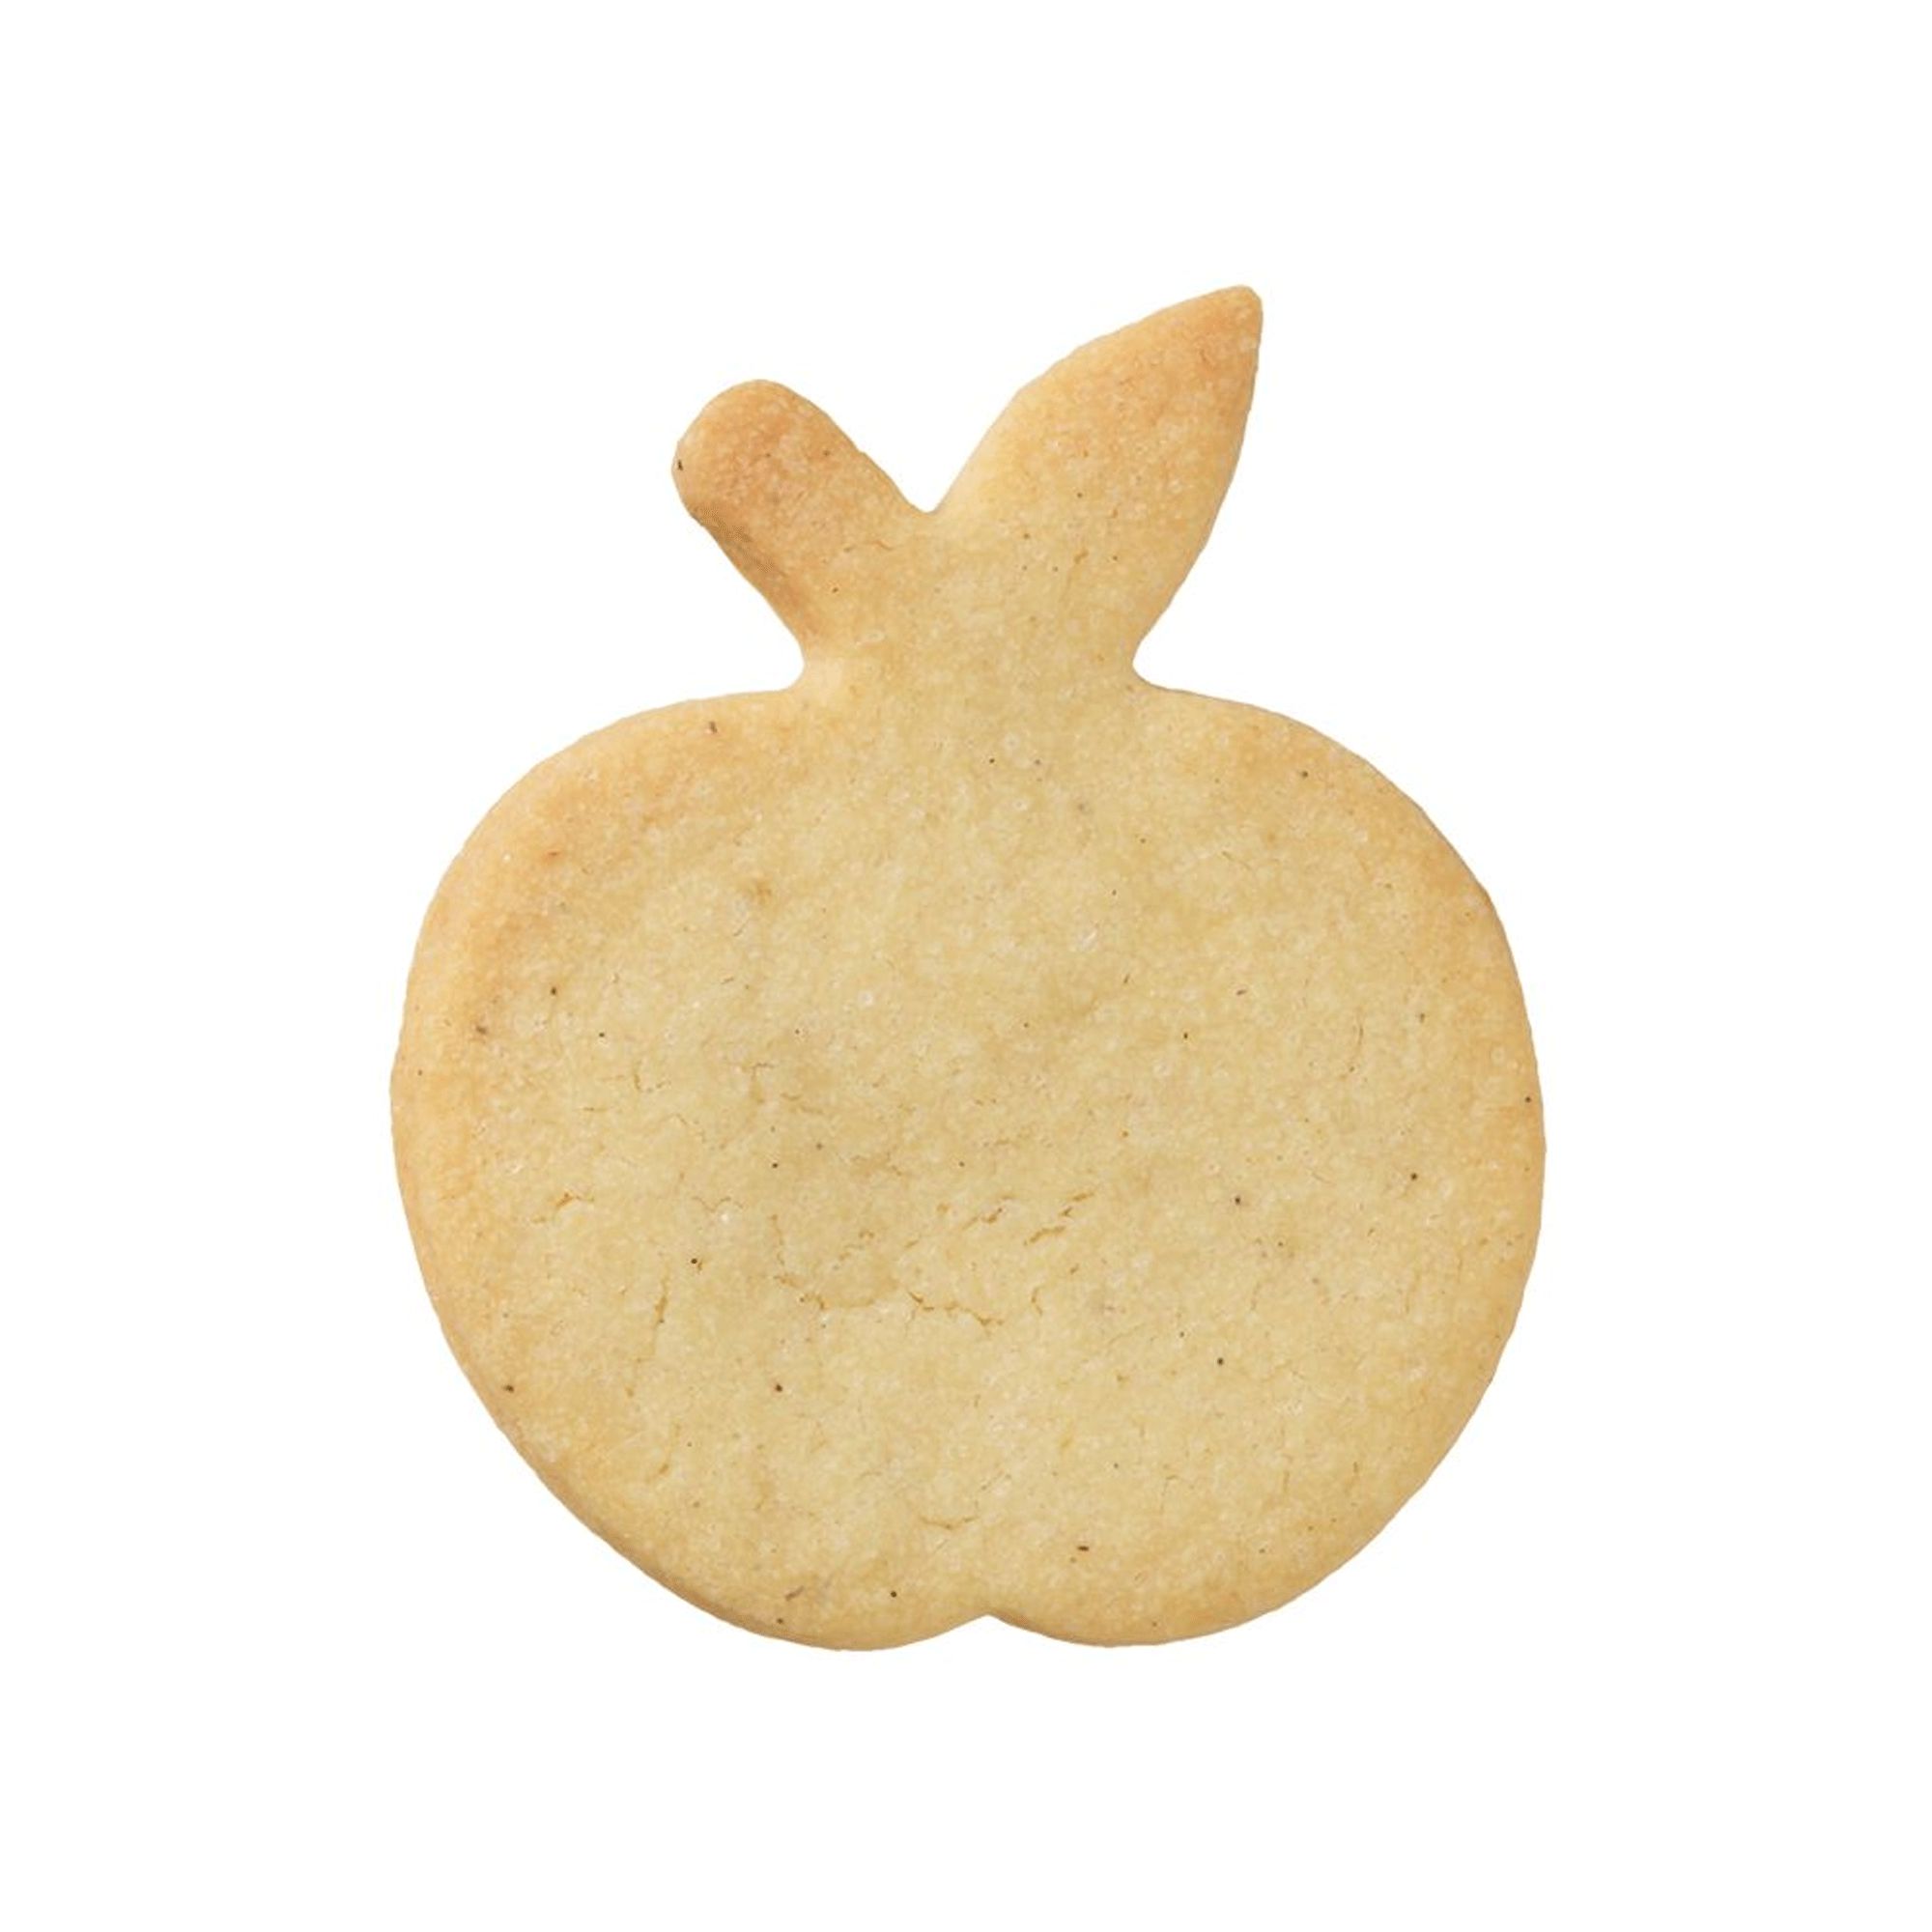 RBV Birkmann - Cookie cutter Apple, 6 cm